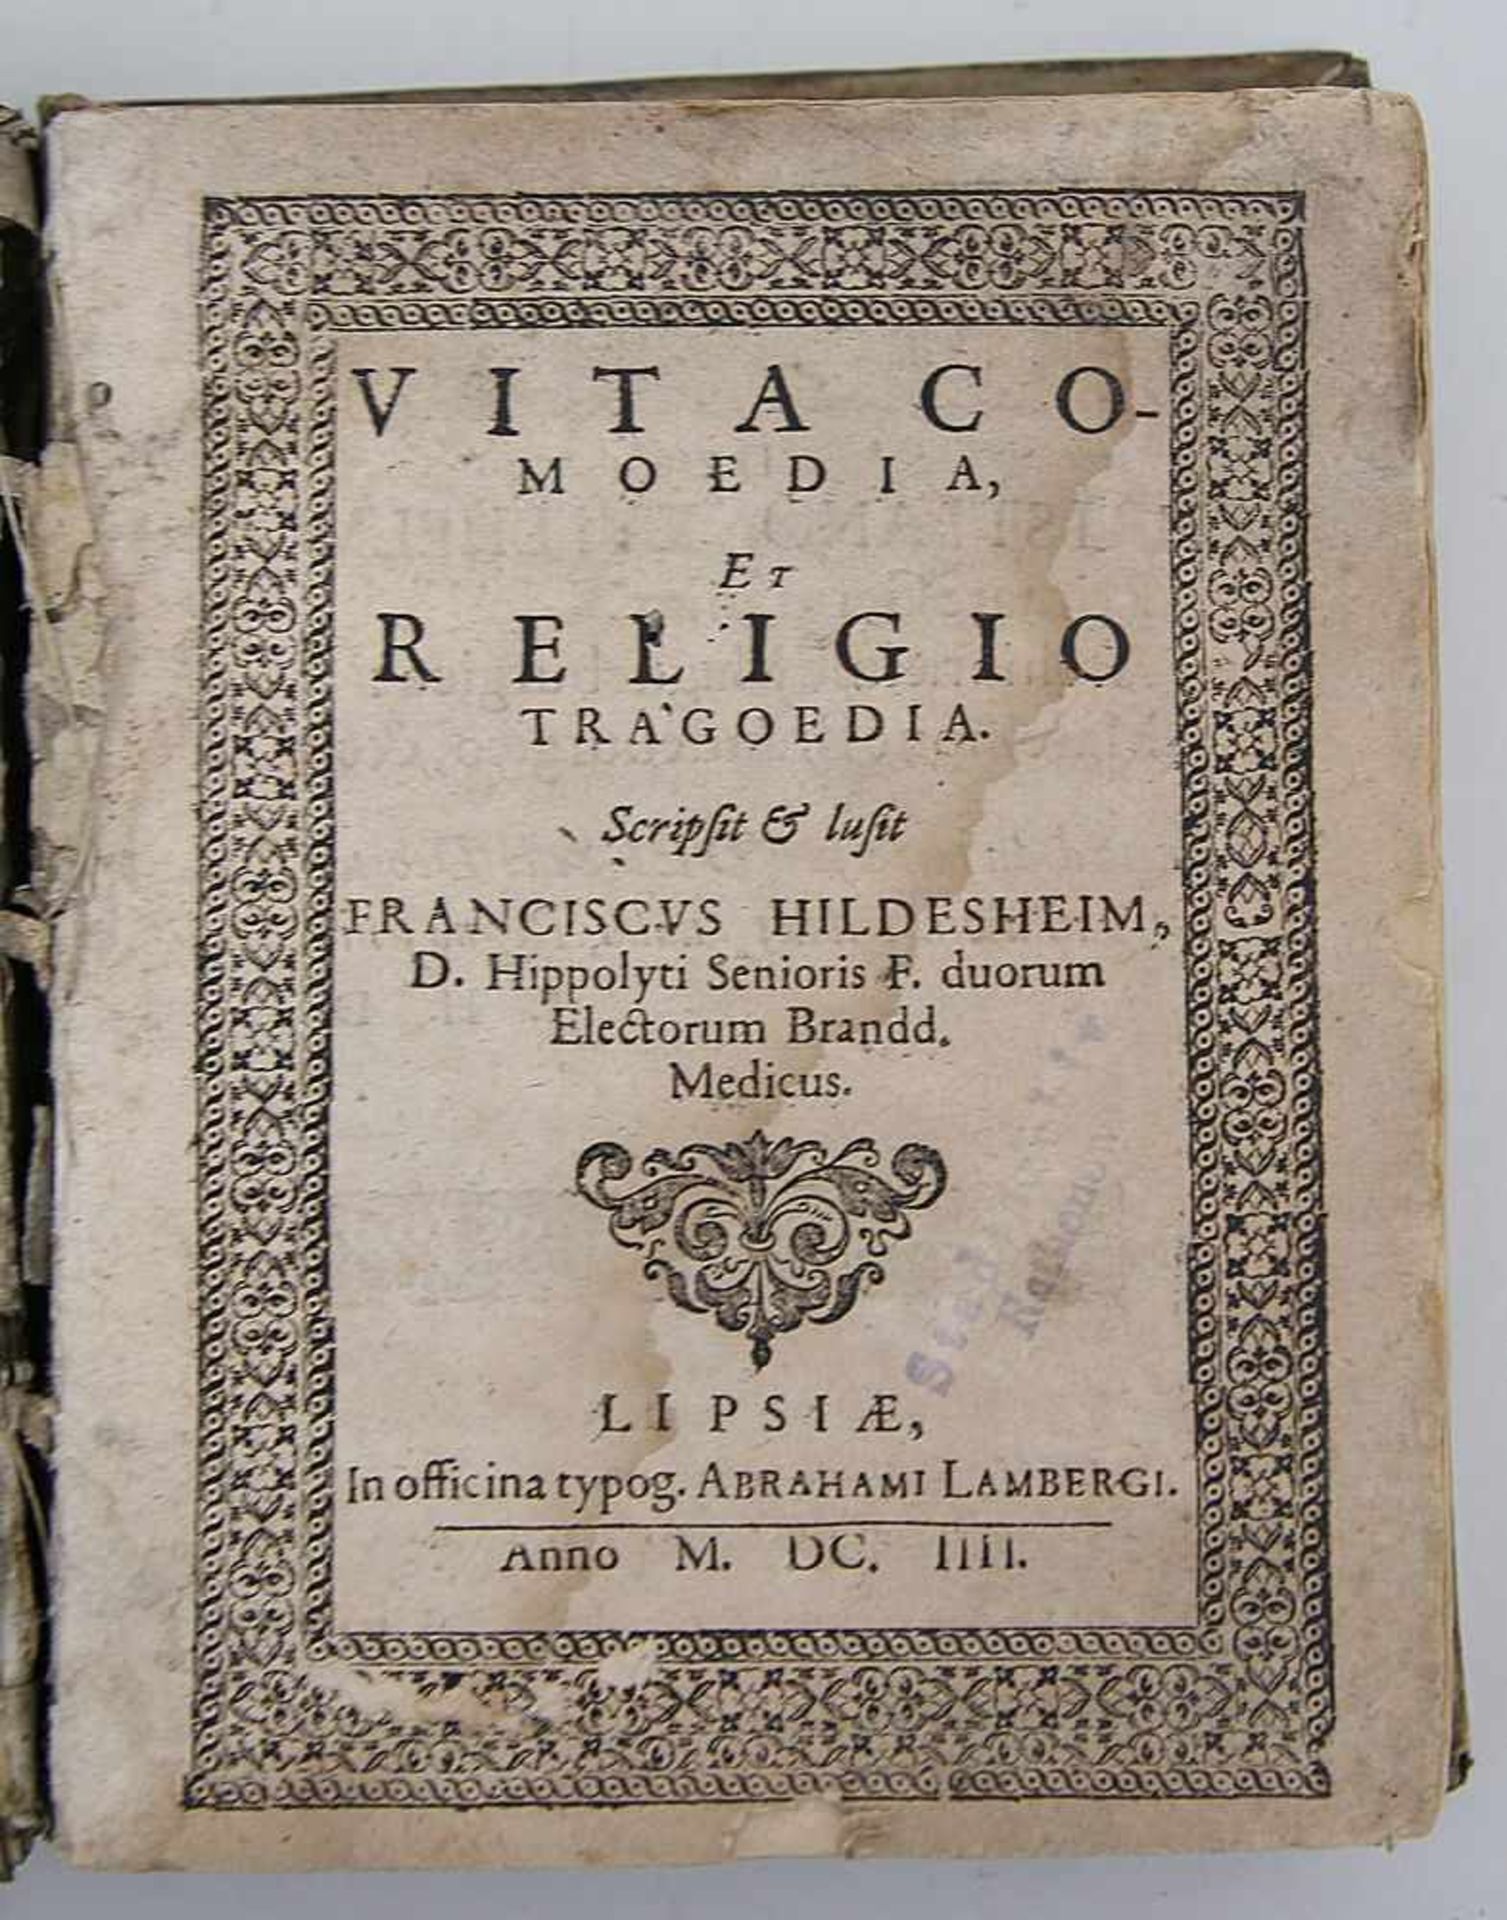 Hildesheim, Franciscus"Vita Comoedia, Et Religio Tragoedia". Gedruckt in Leipzig, in officina typog.